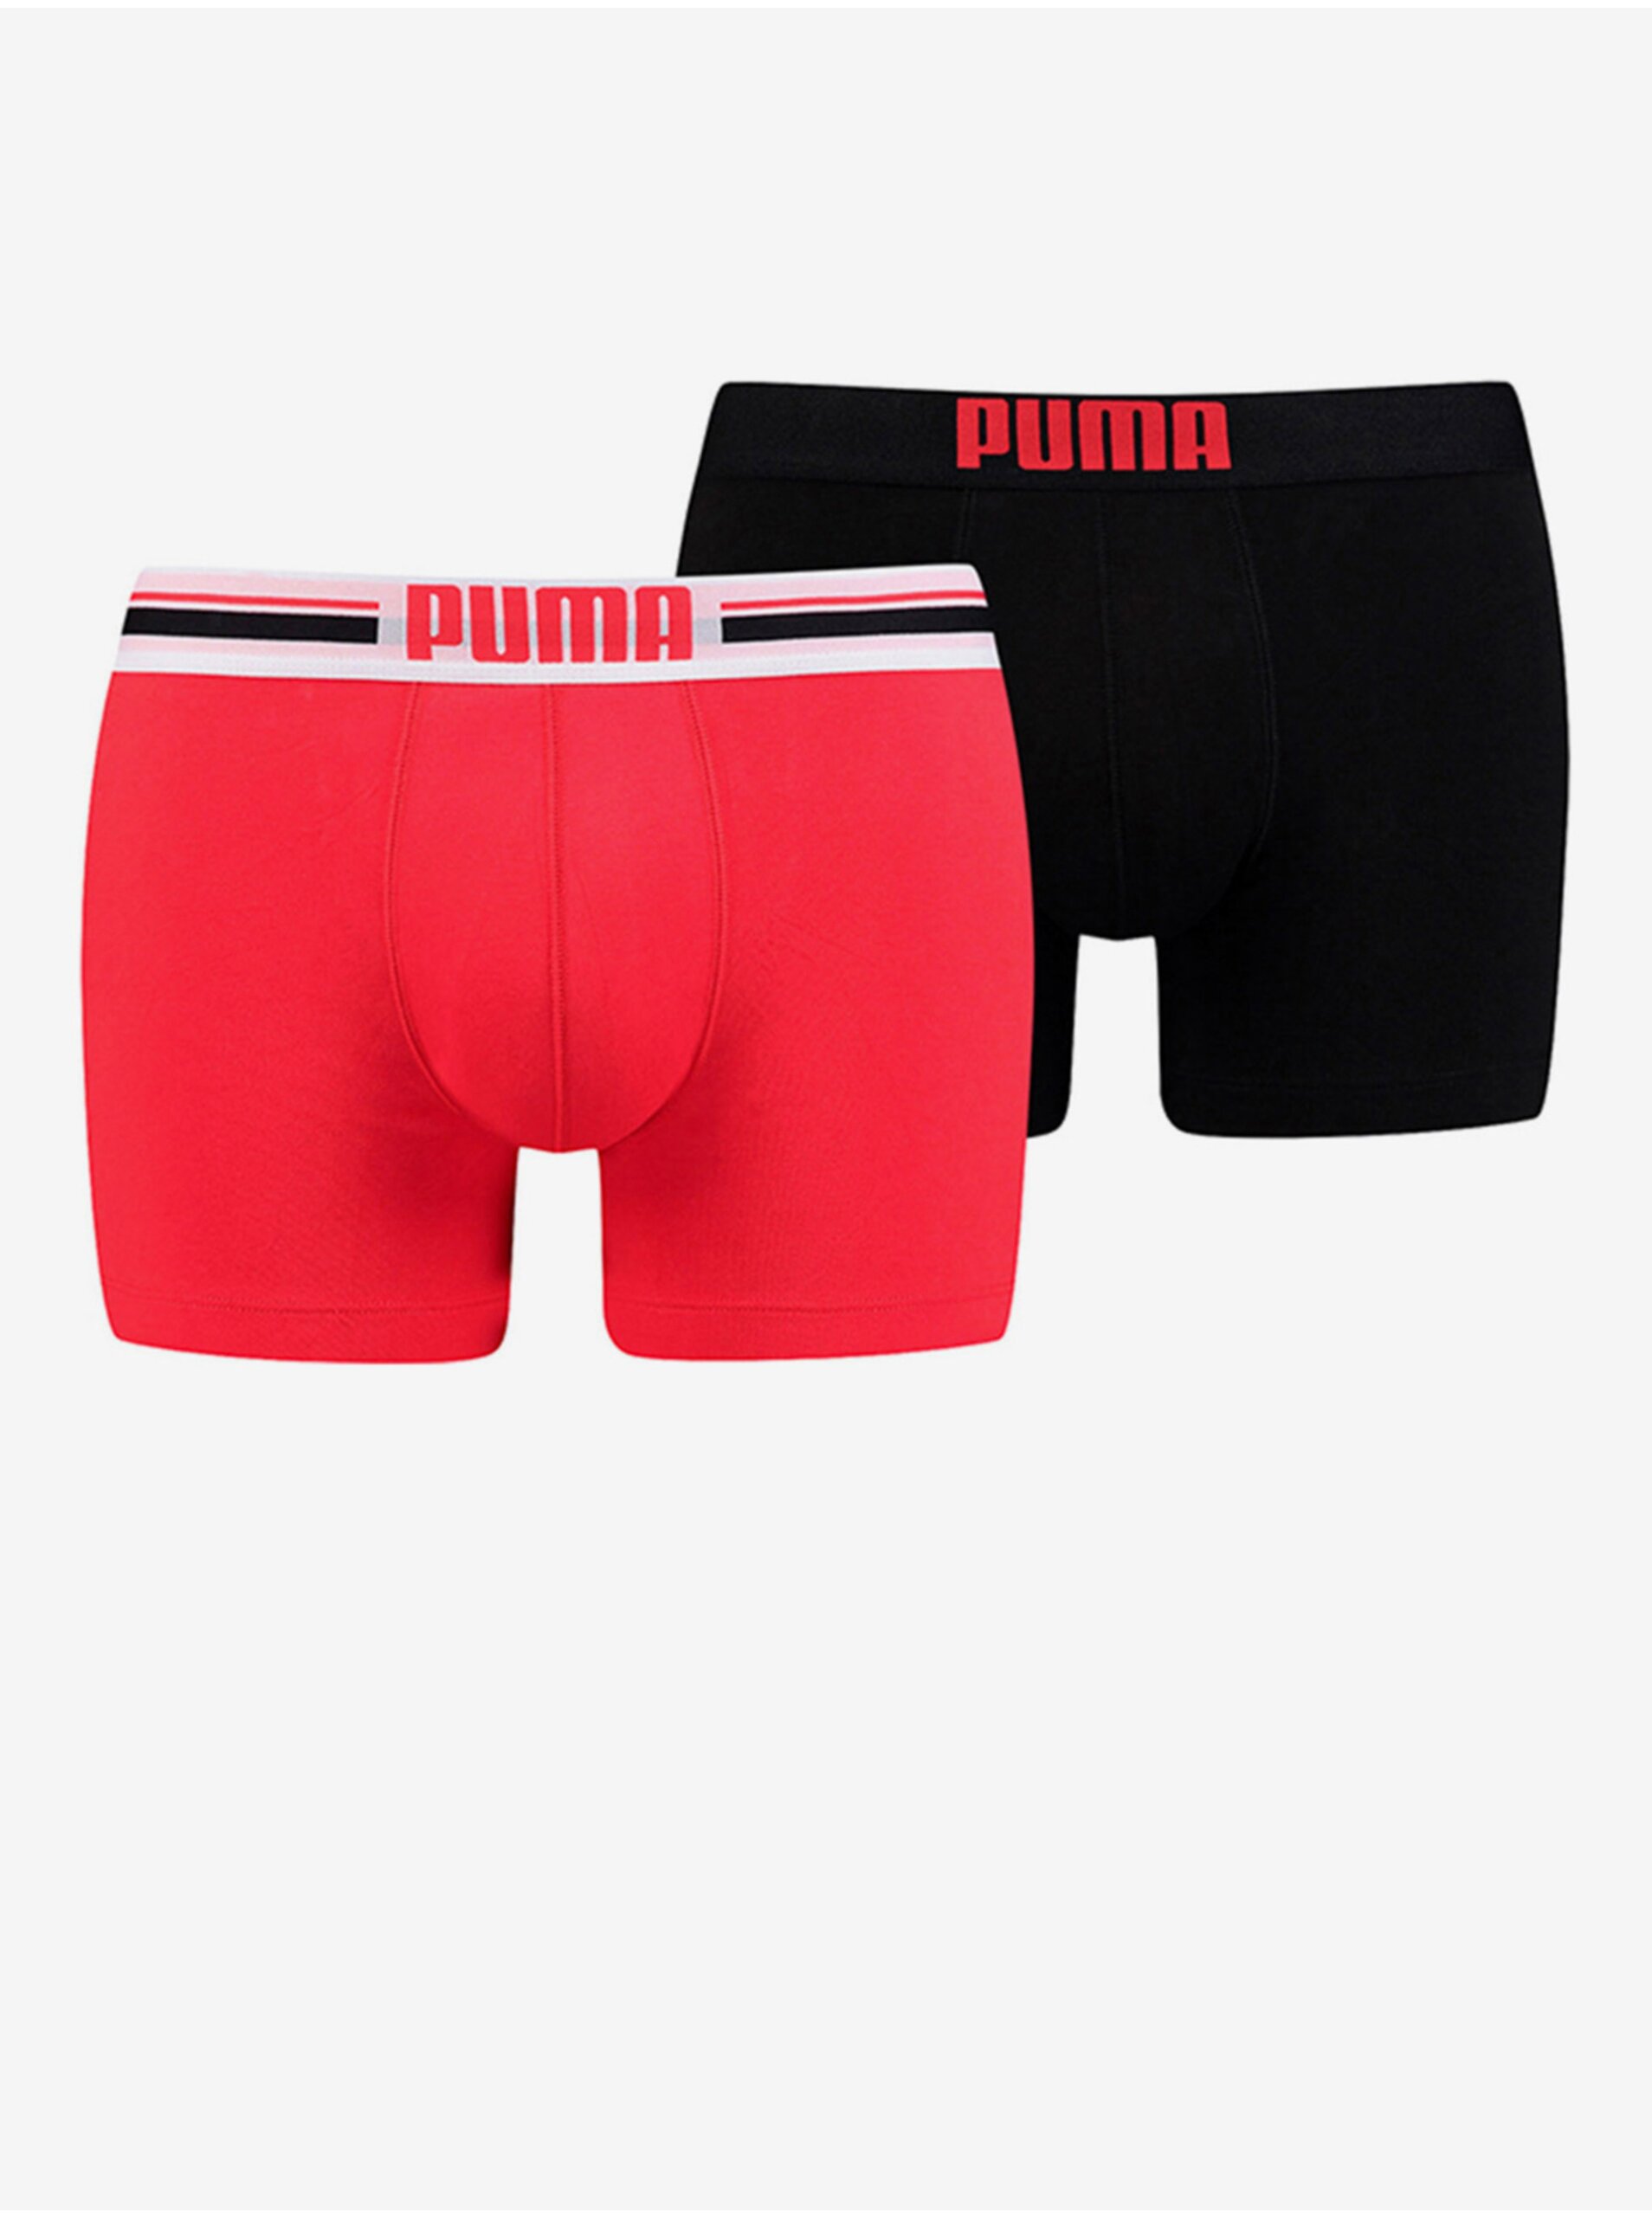 Levně Sada dvou pánských boxerek v červené a černé barvě Puma